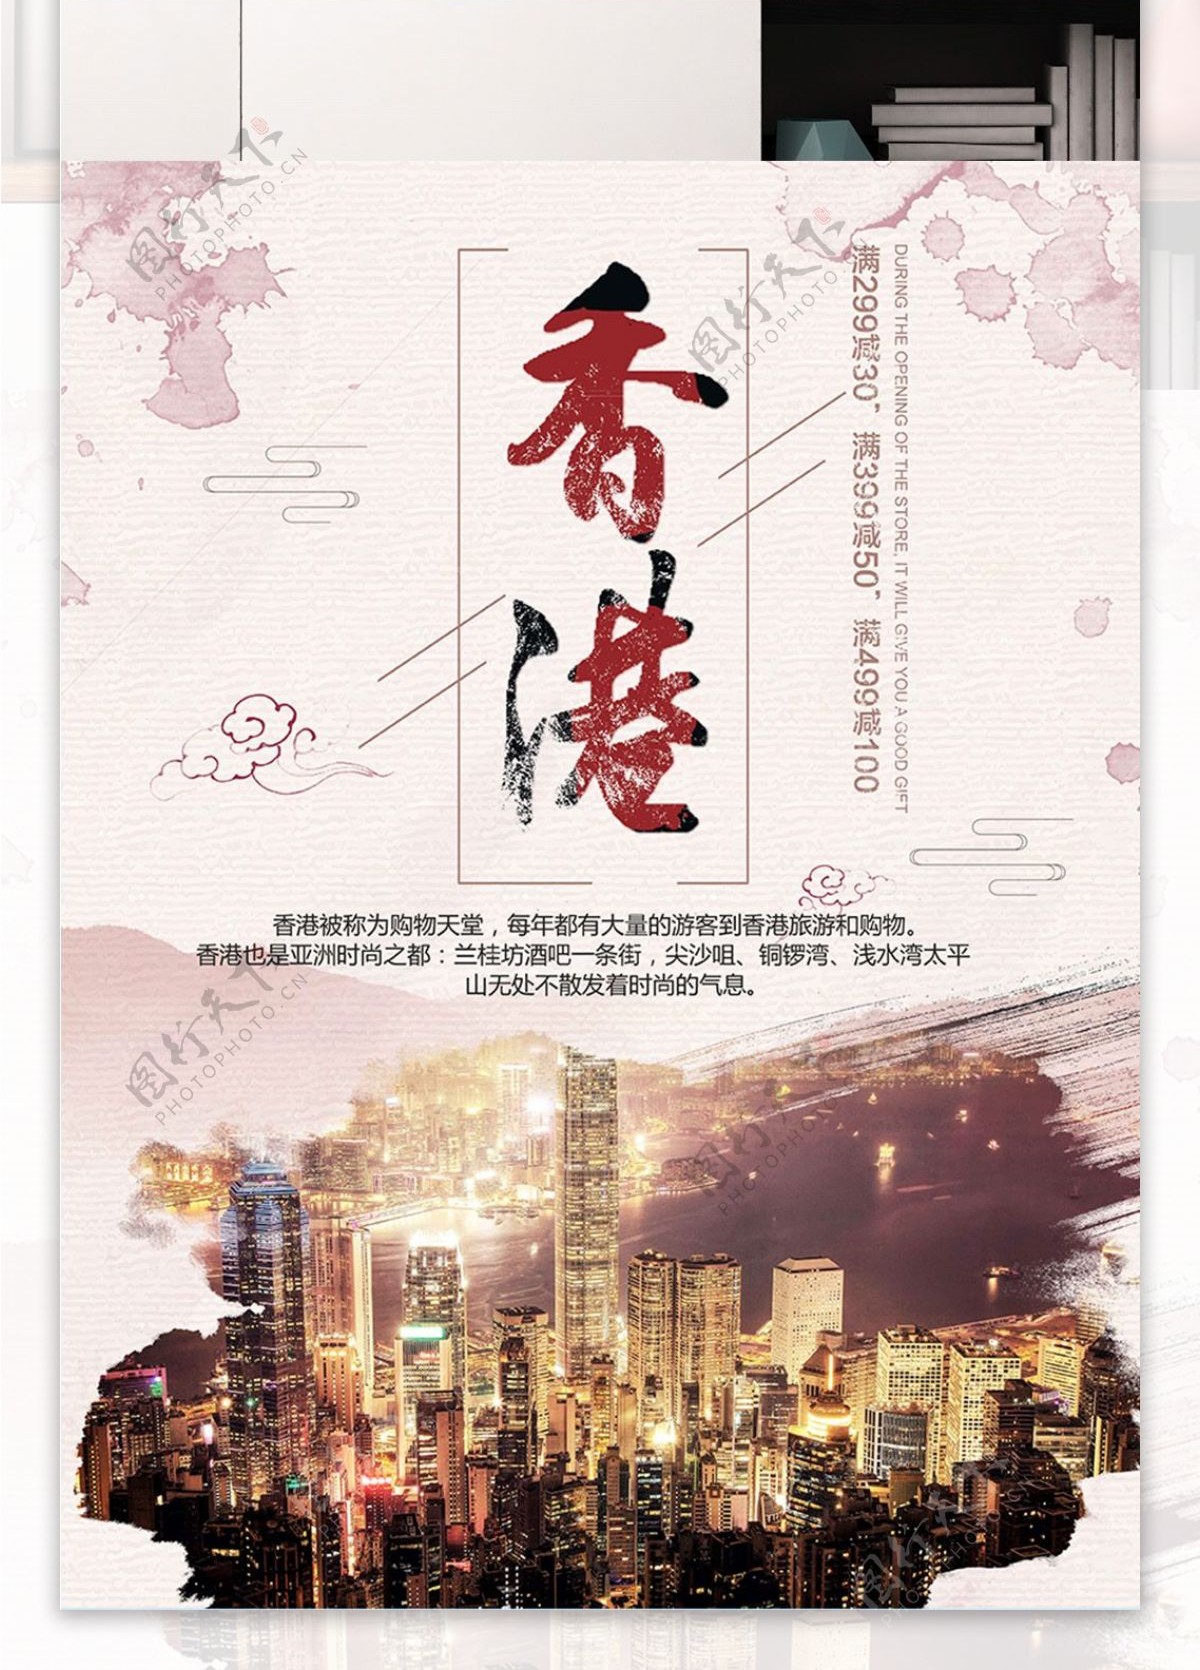 黄色背景简约大气浪漫清新魅力香港宣传海报